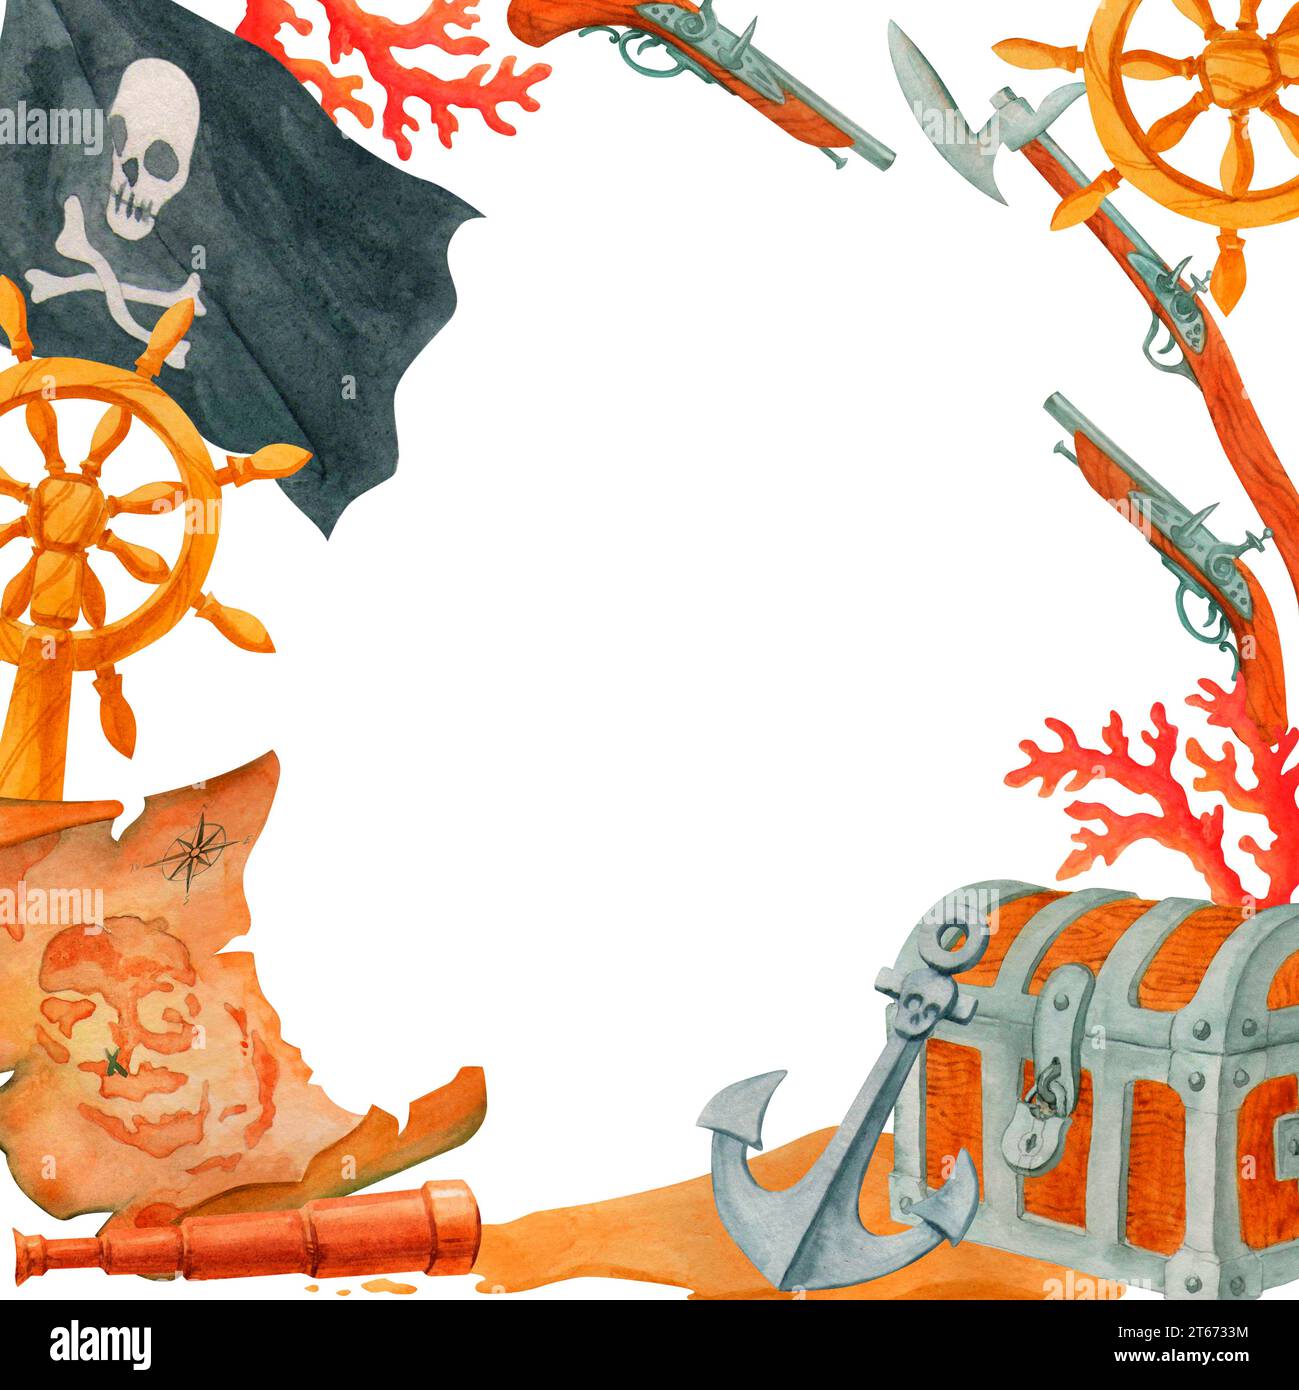 Simple bordure ou cadre, fait de drapeau noir, coraux, carte au Trésor ancienne, spyglass, armes de pirate, coffres, ancre et volant. Col d'eau isolé Banque D'Images